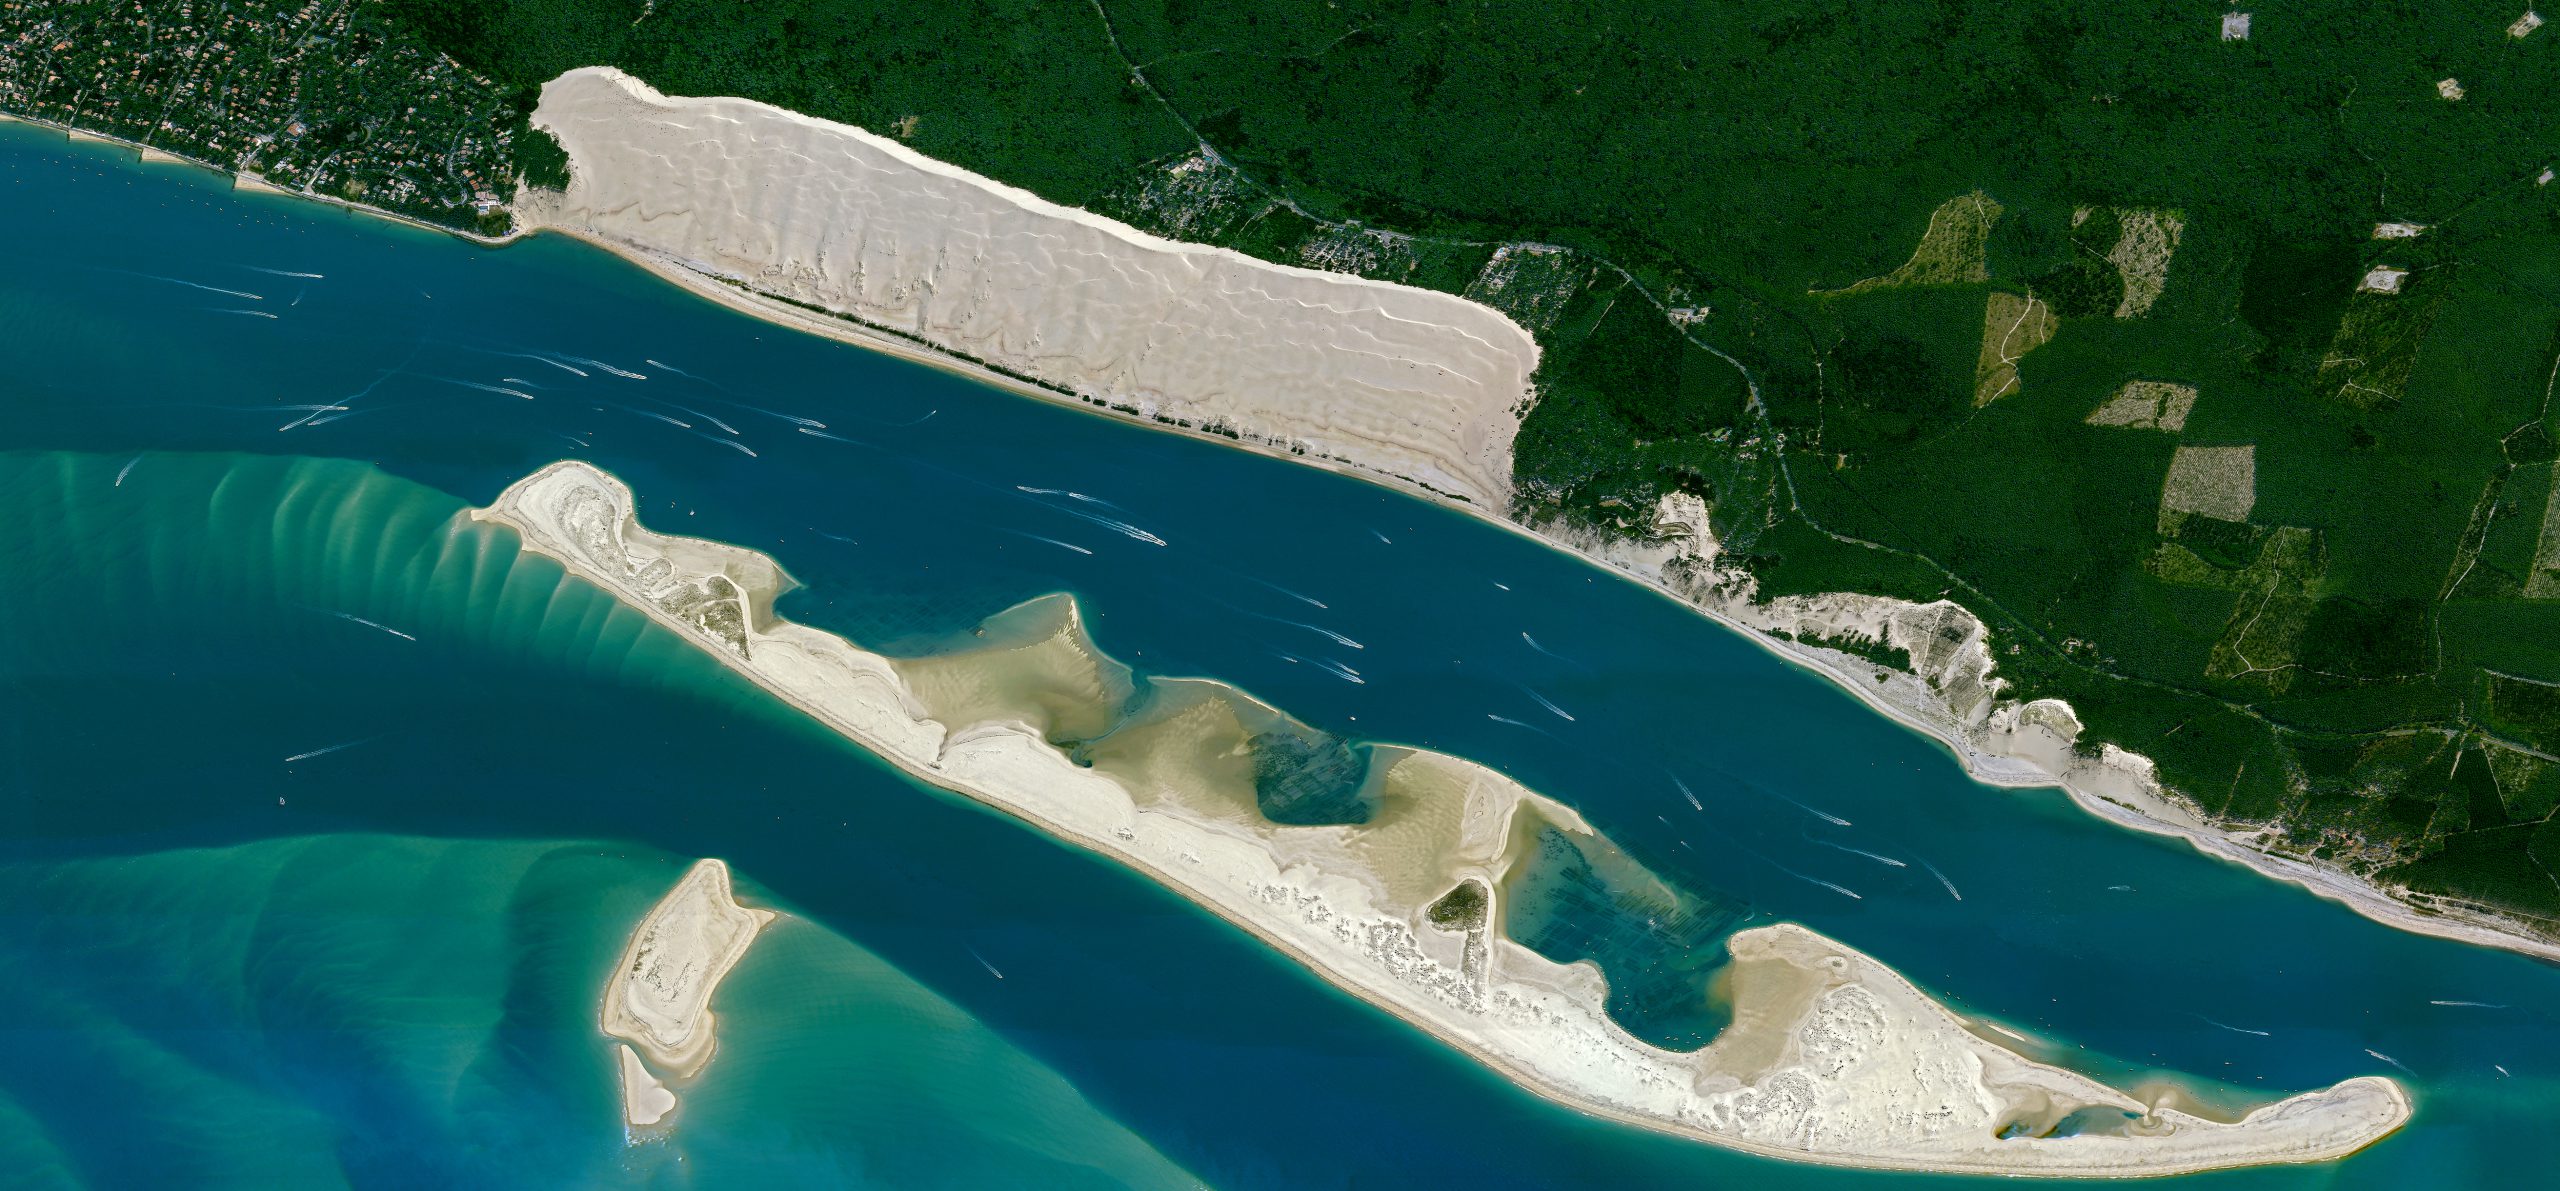 Dune du Pilat in Arcachon Bay, France captured by Pléiades Neo satellite